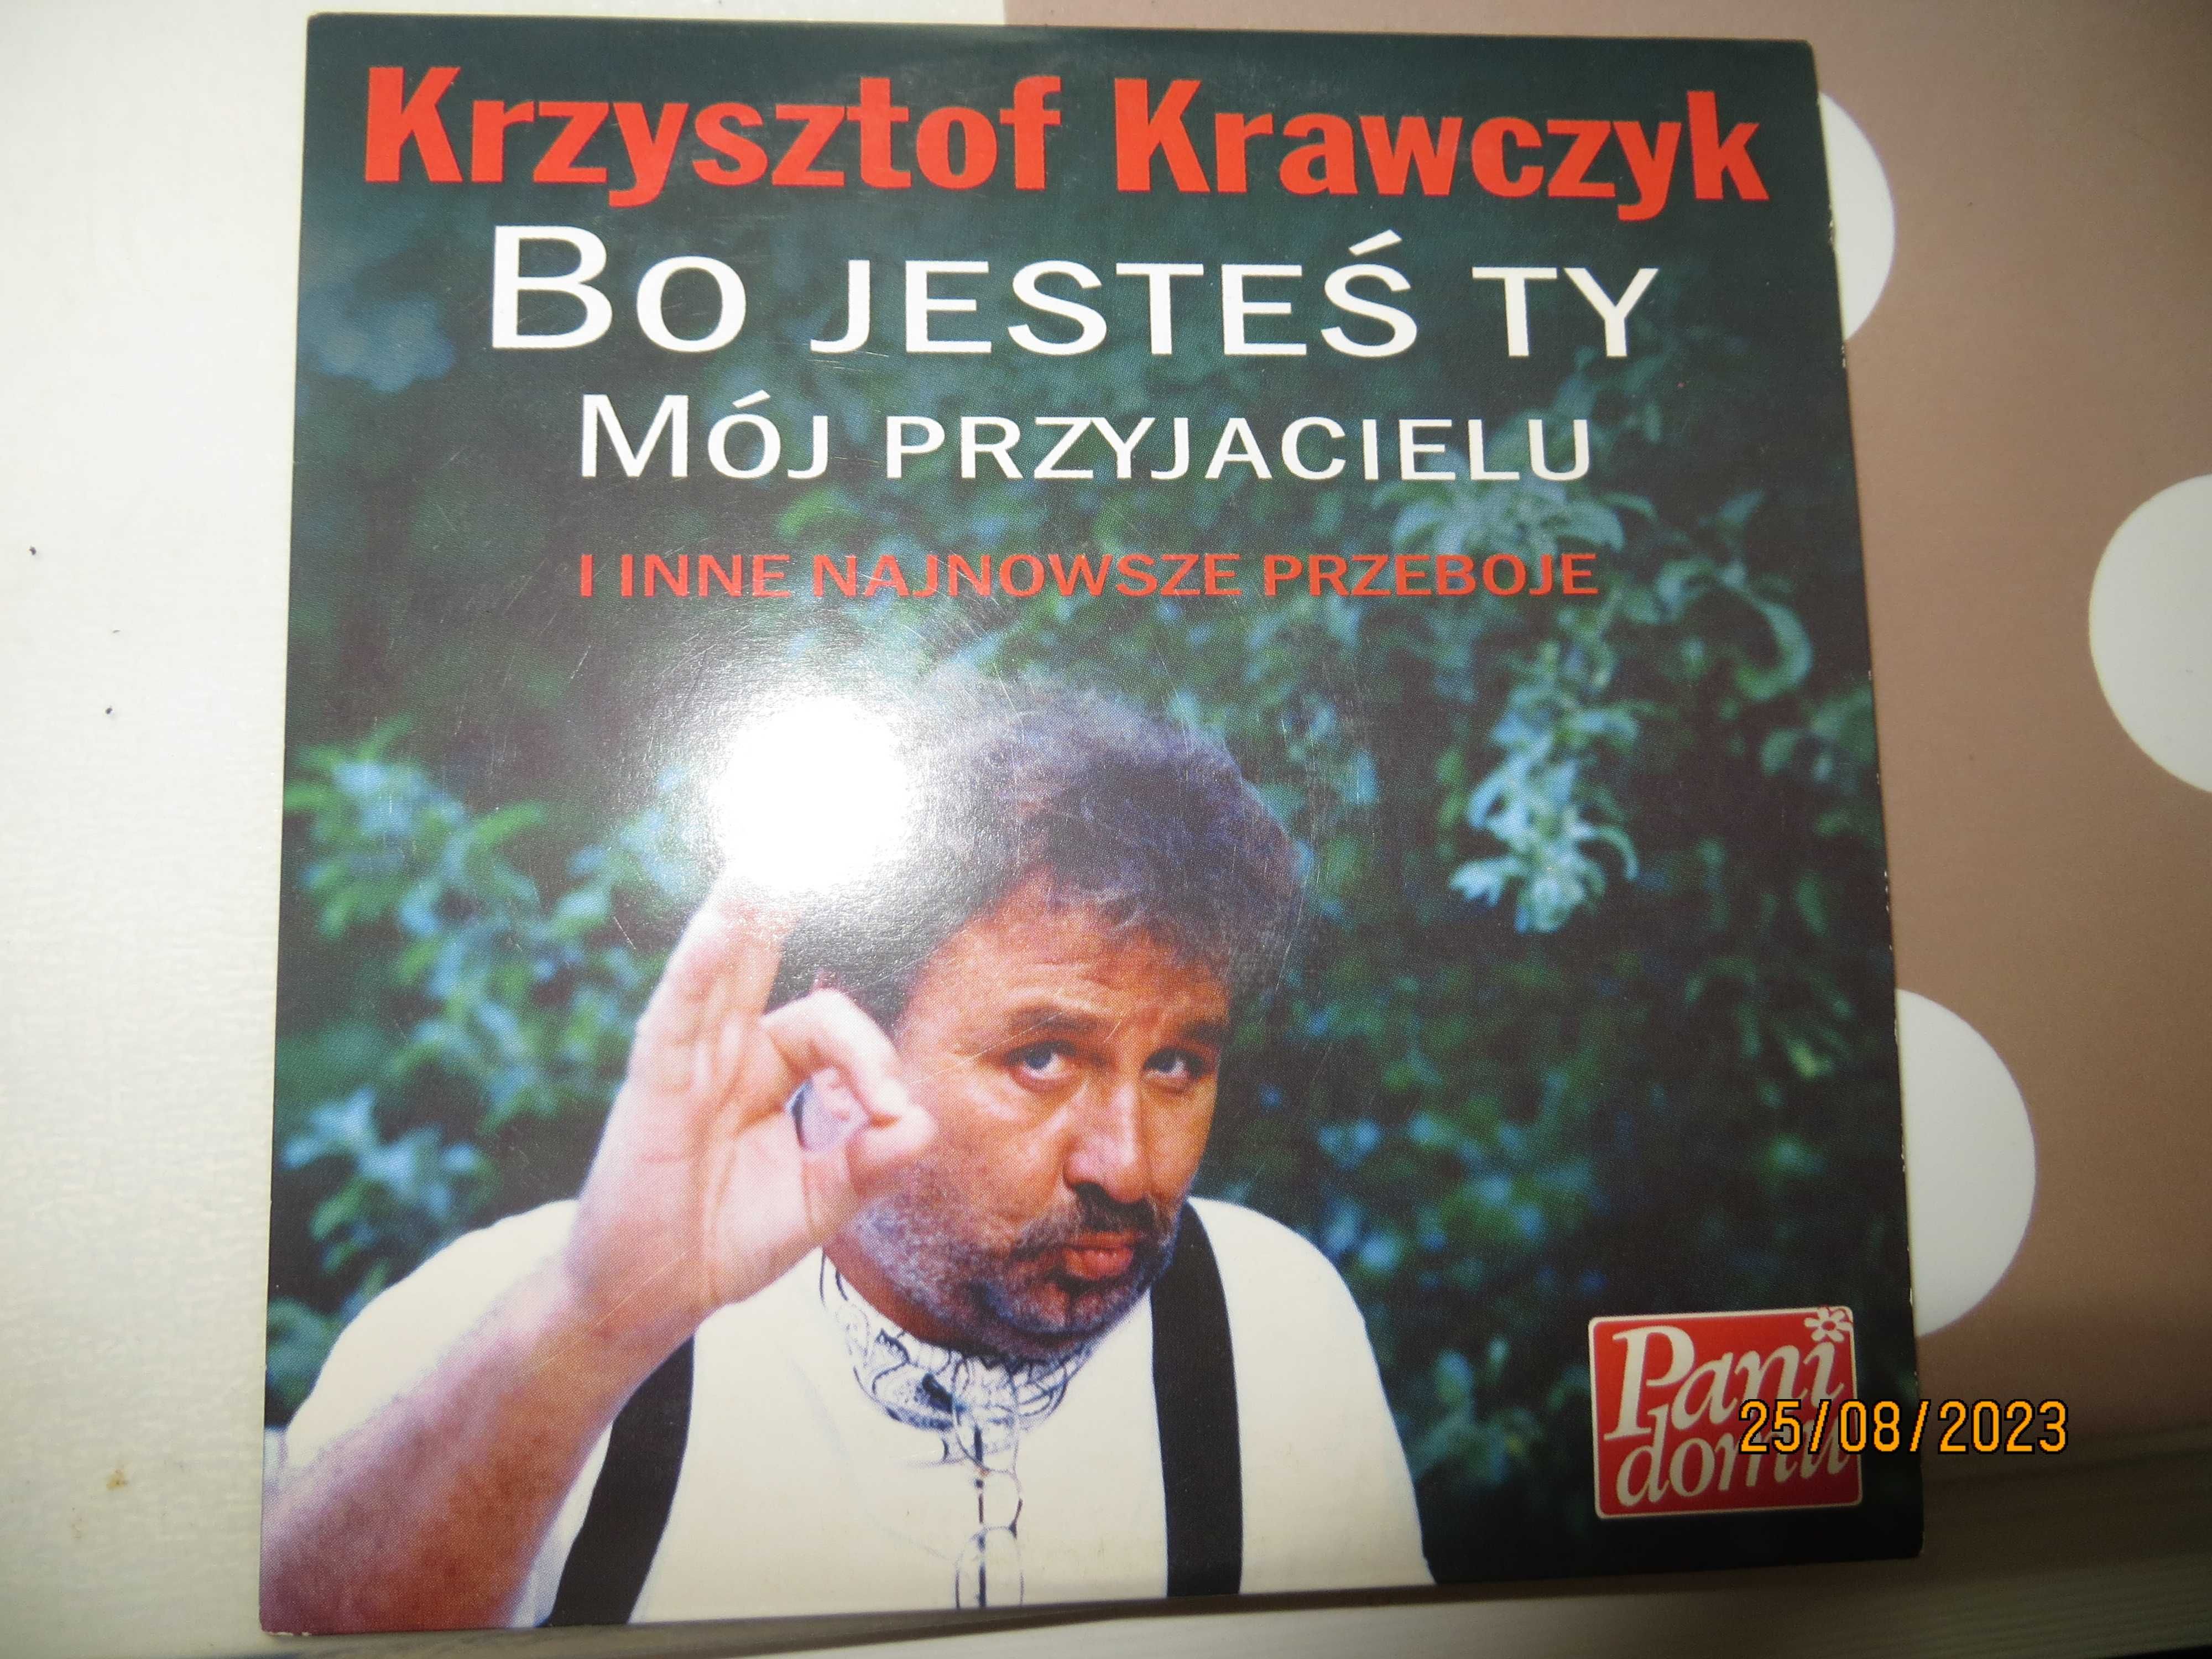 Cd z piosenkami Krzysztofa Krawczyka i Goran Bregovic